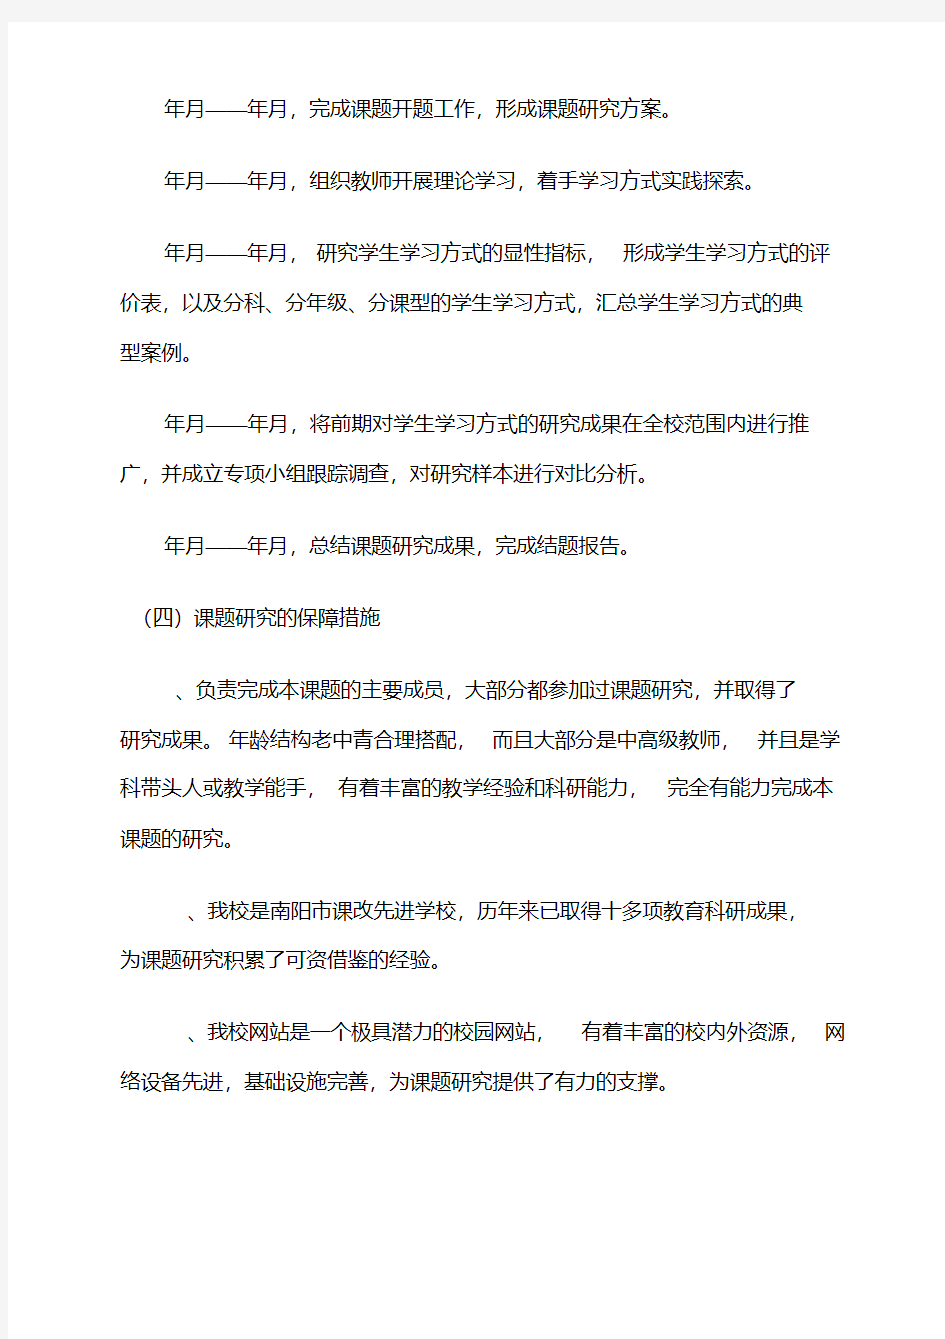 初中语文学习方式的结题报告